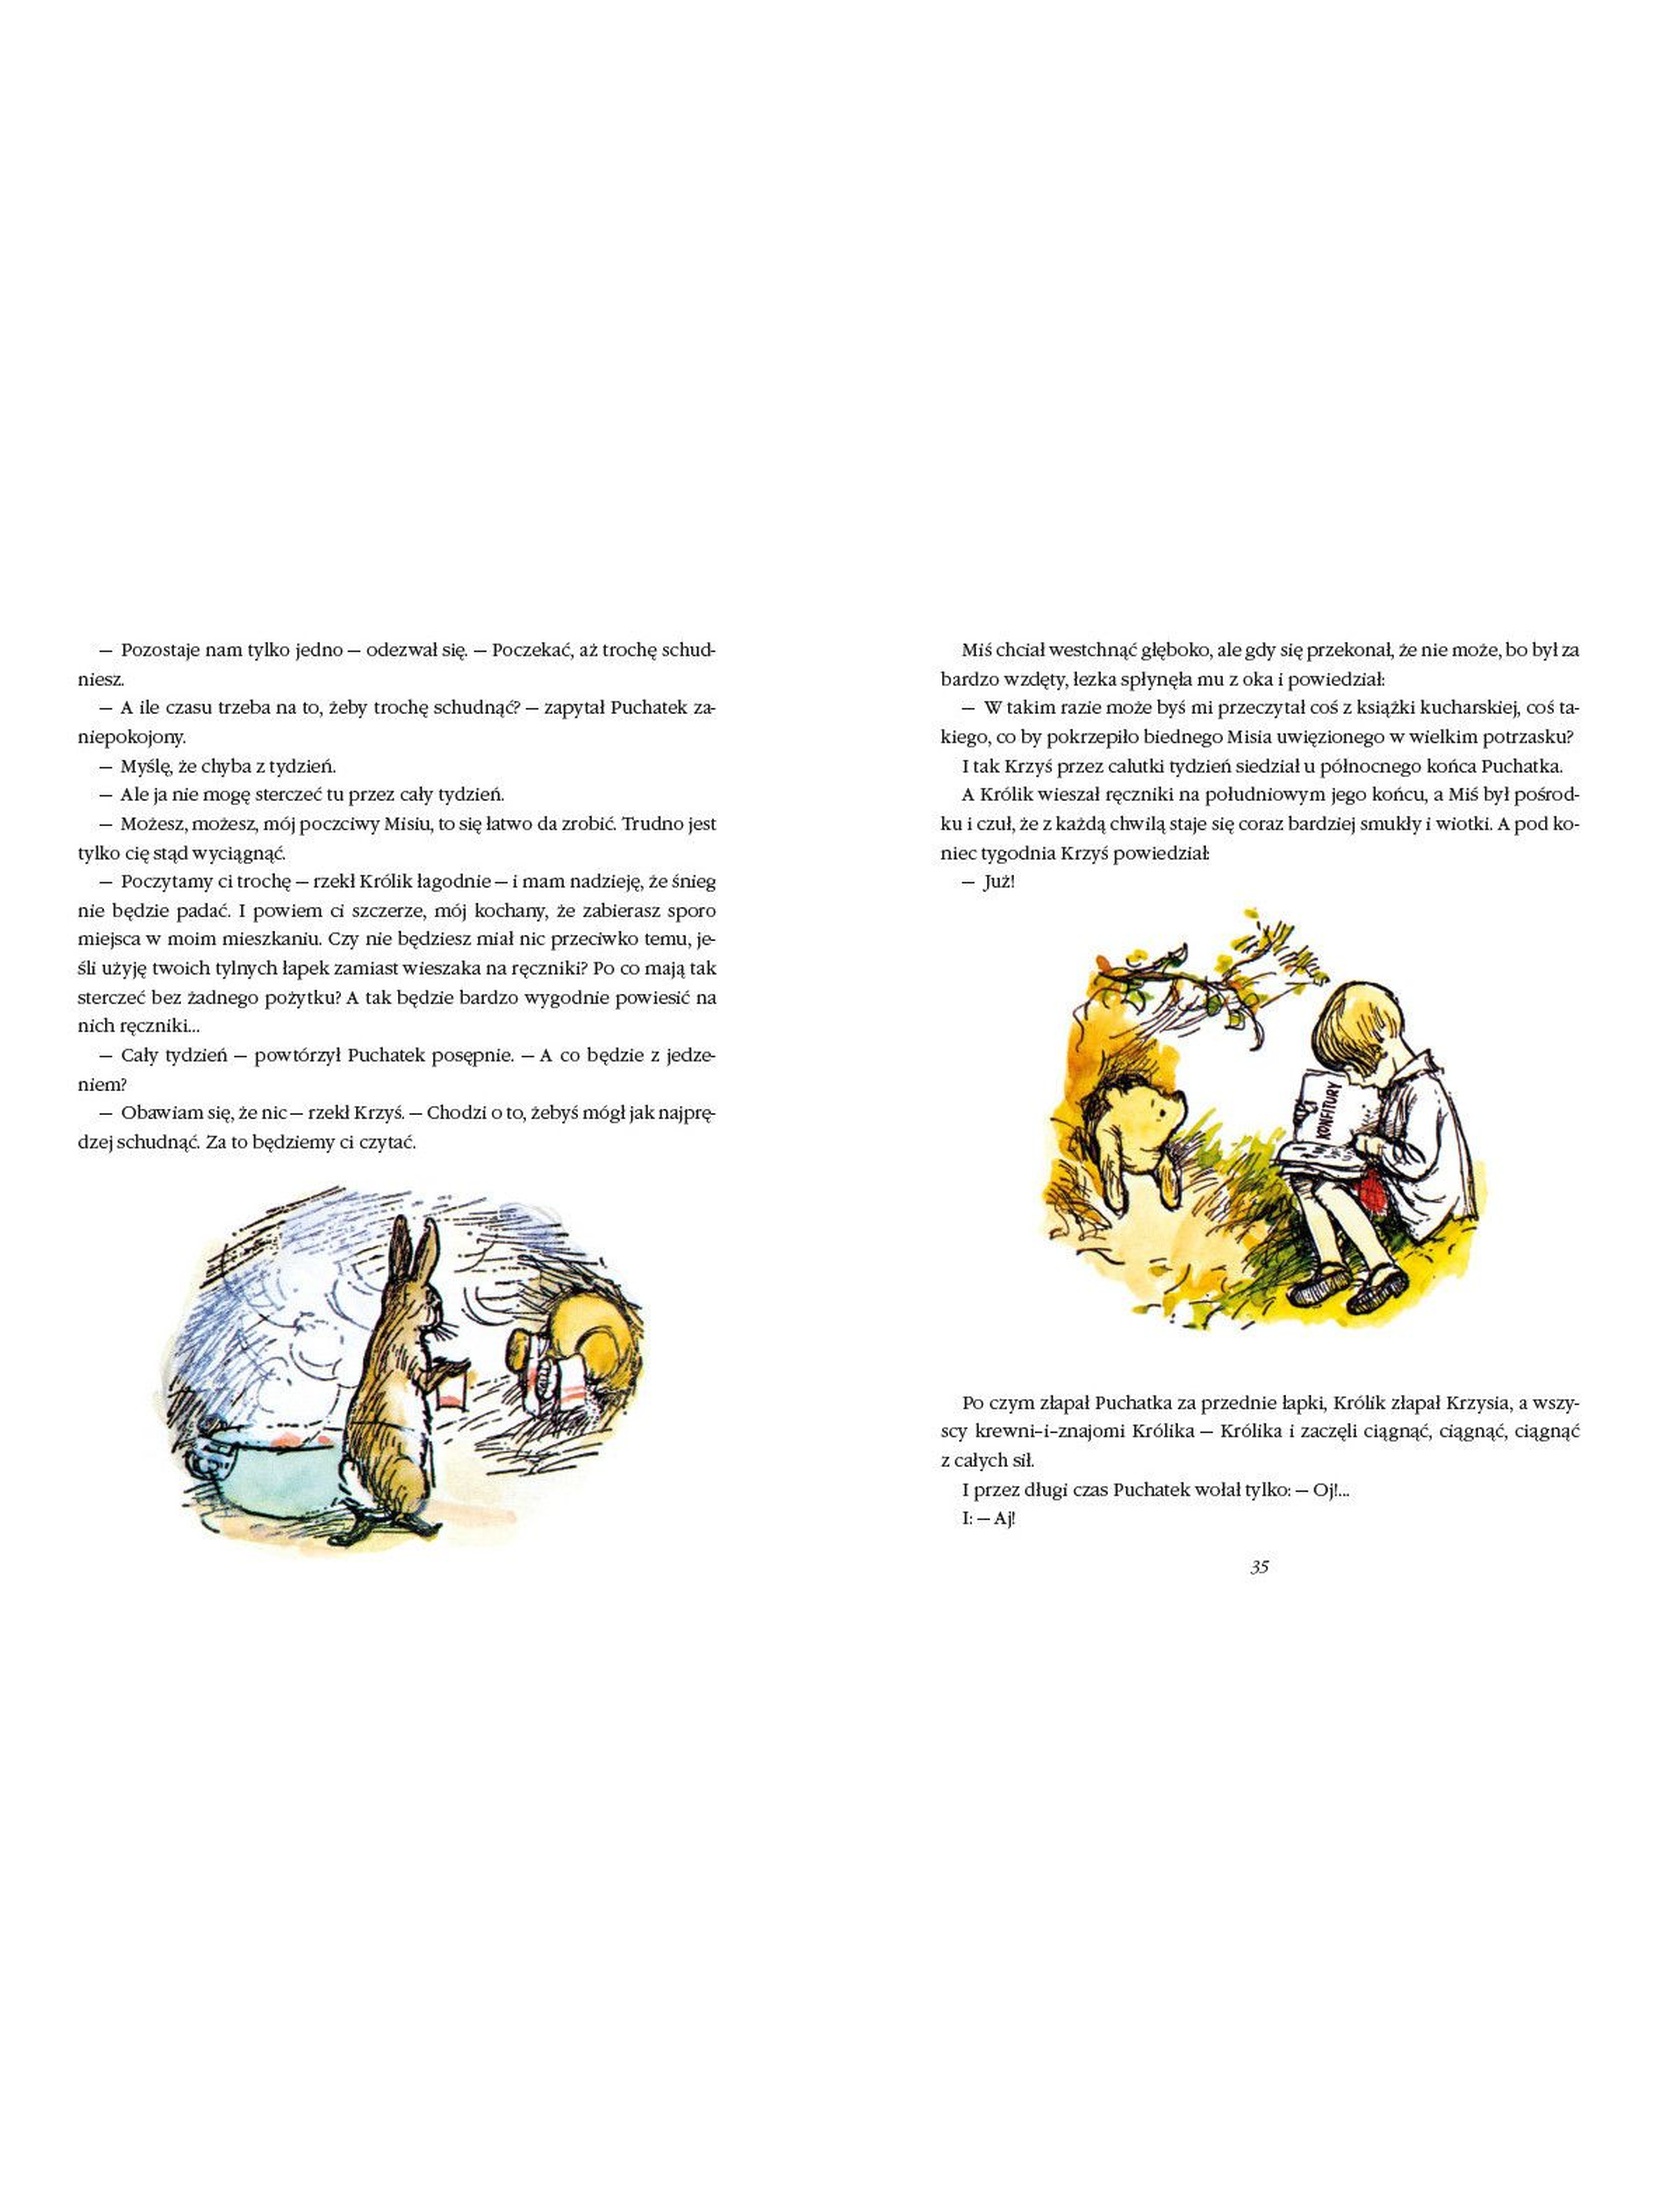 Kubuś Puchatek-Chatka Puchatka- Książka dla dzieci